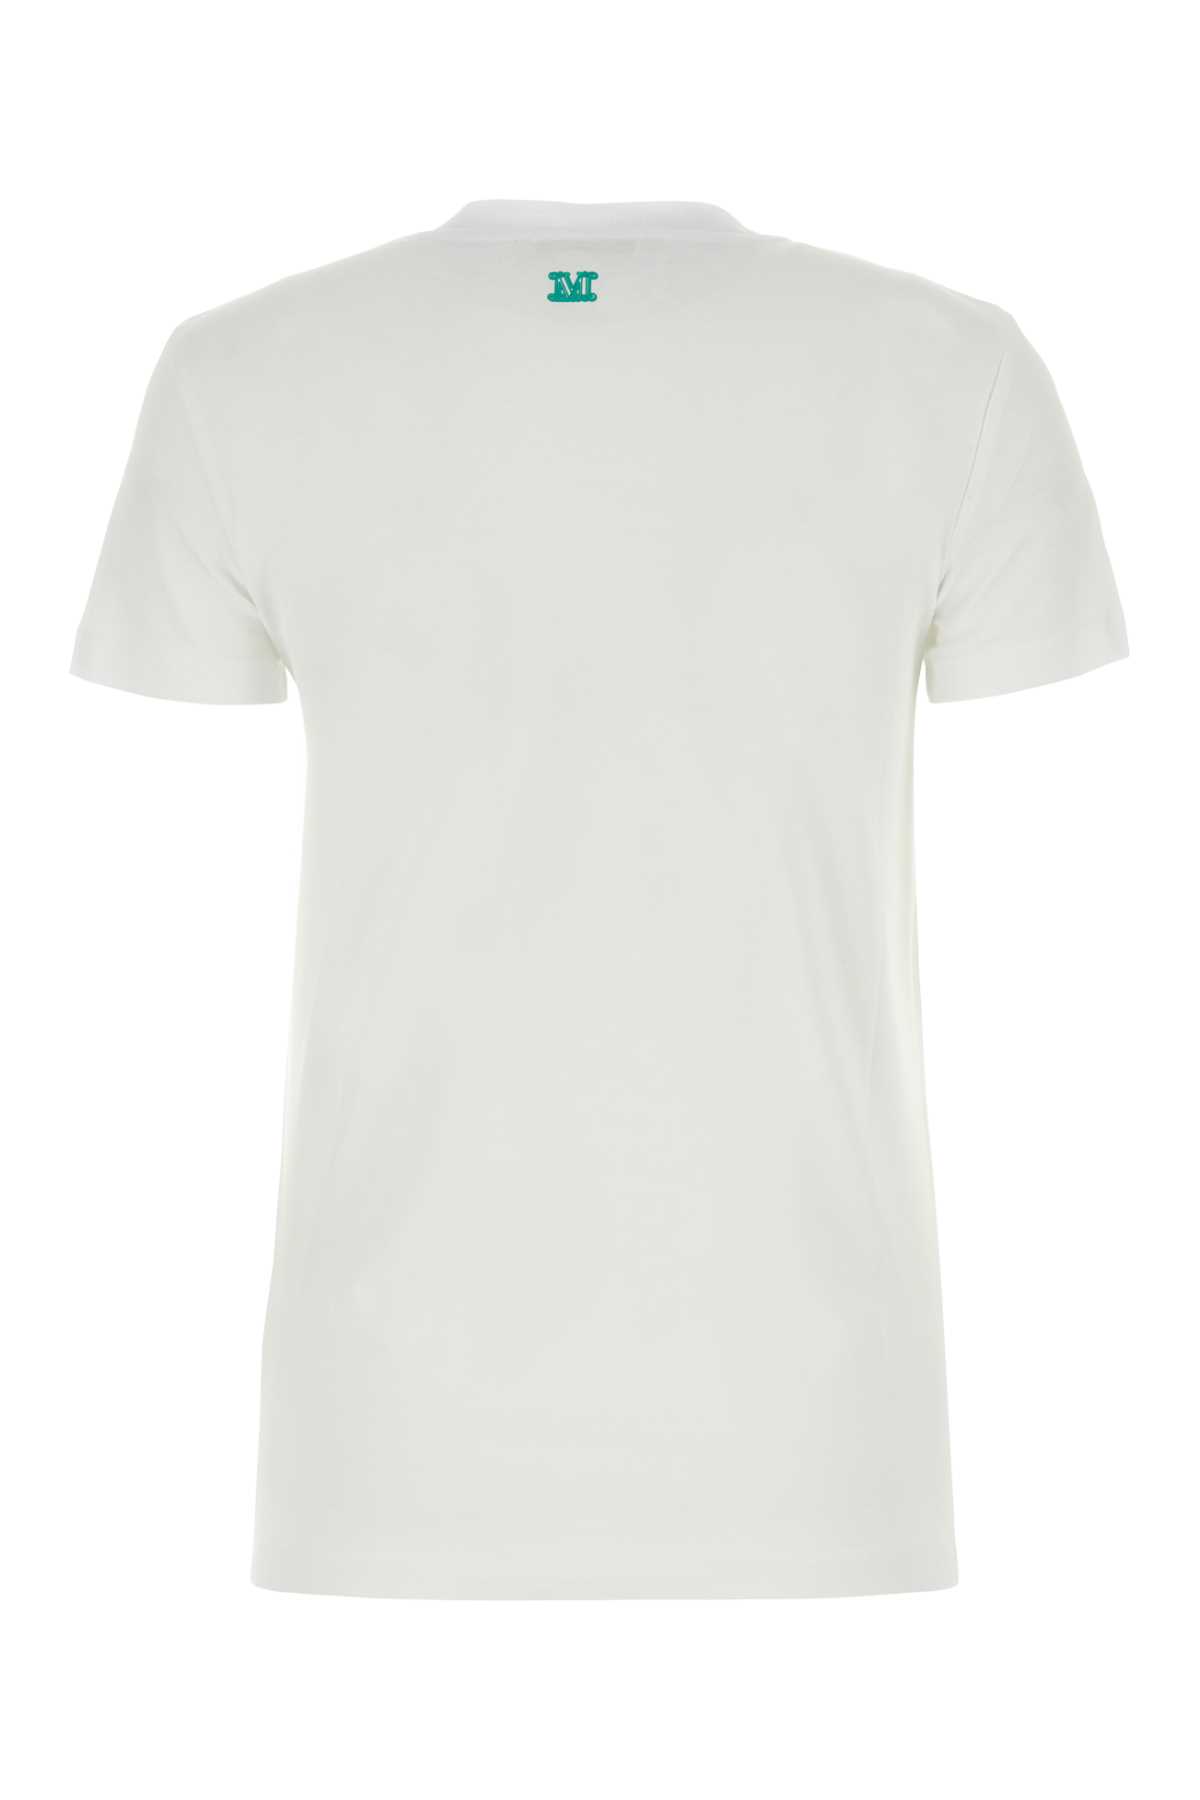 Max Mara White Cotton Mincio T-shirt In 035